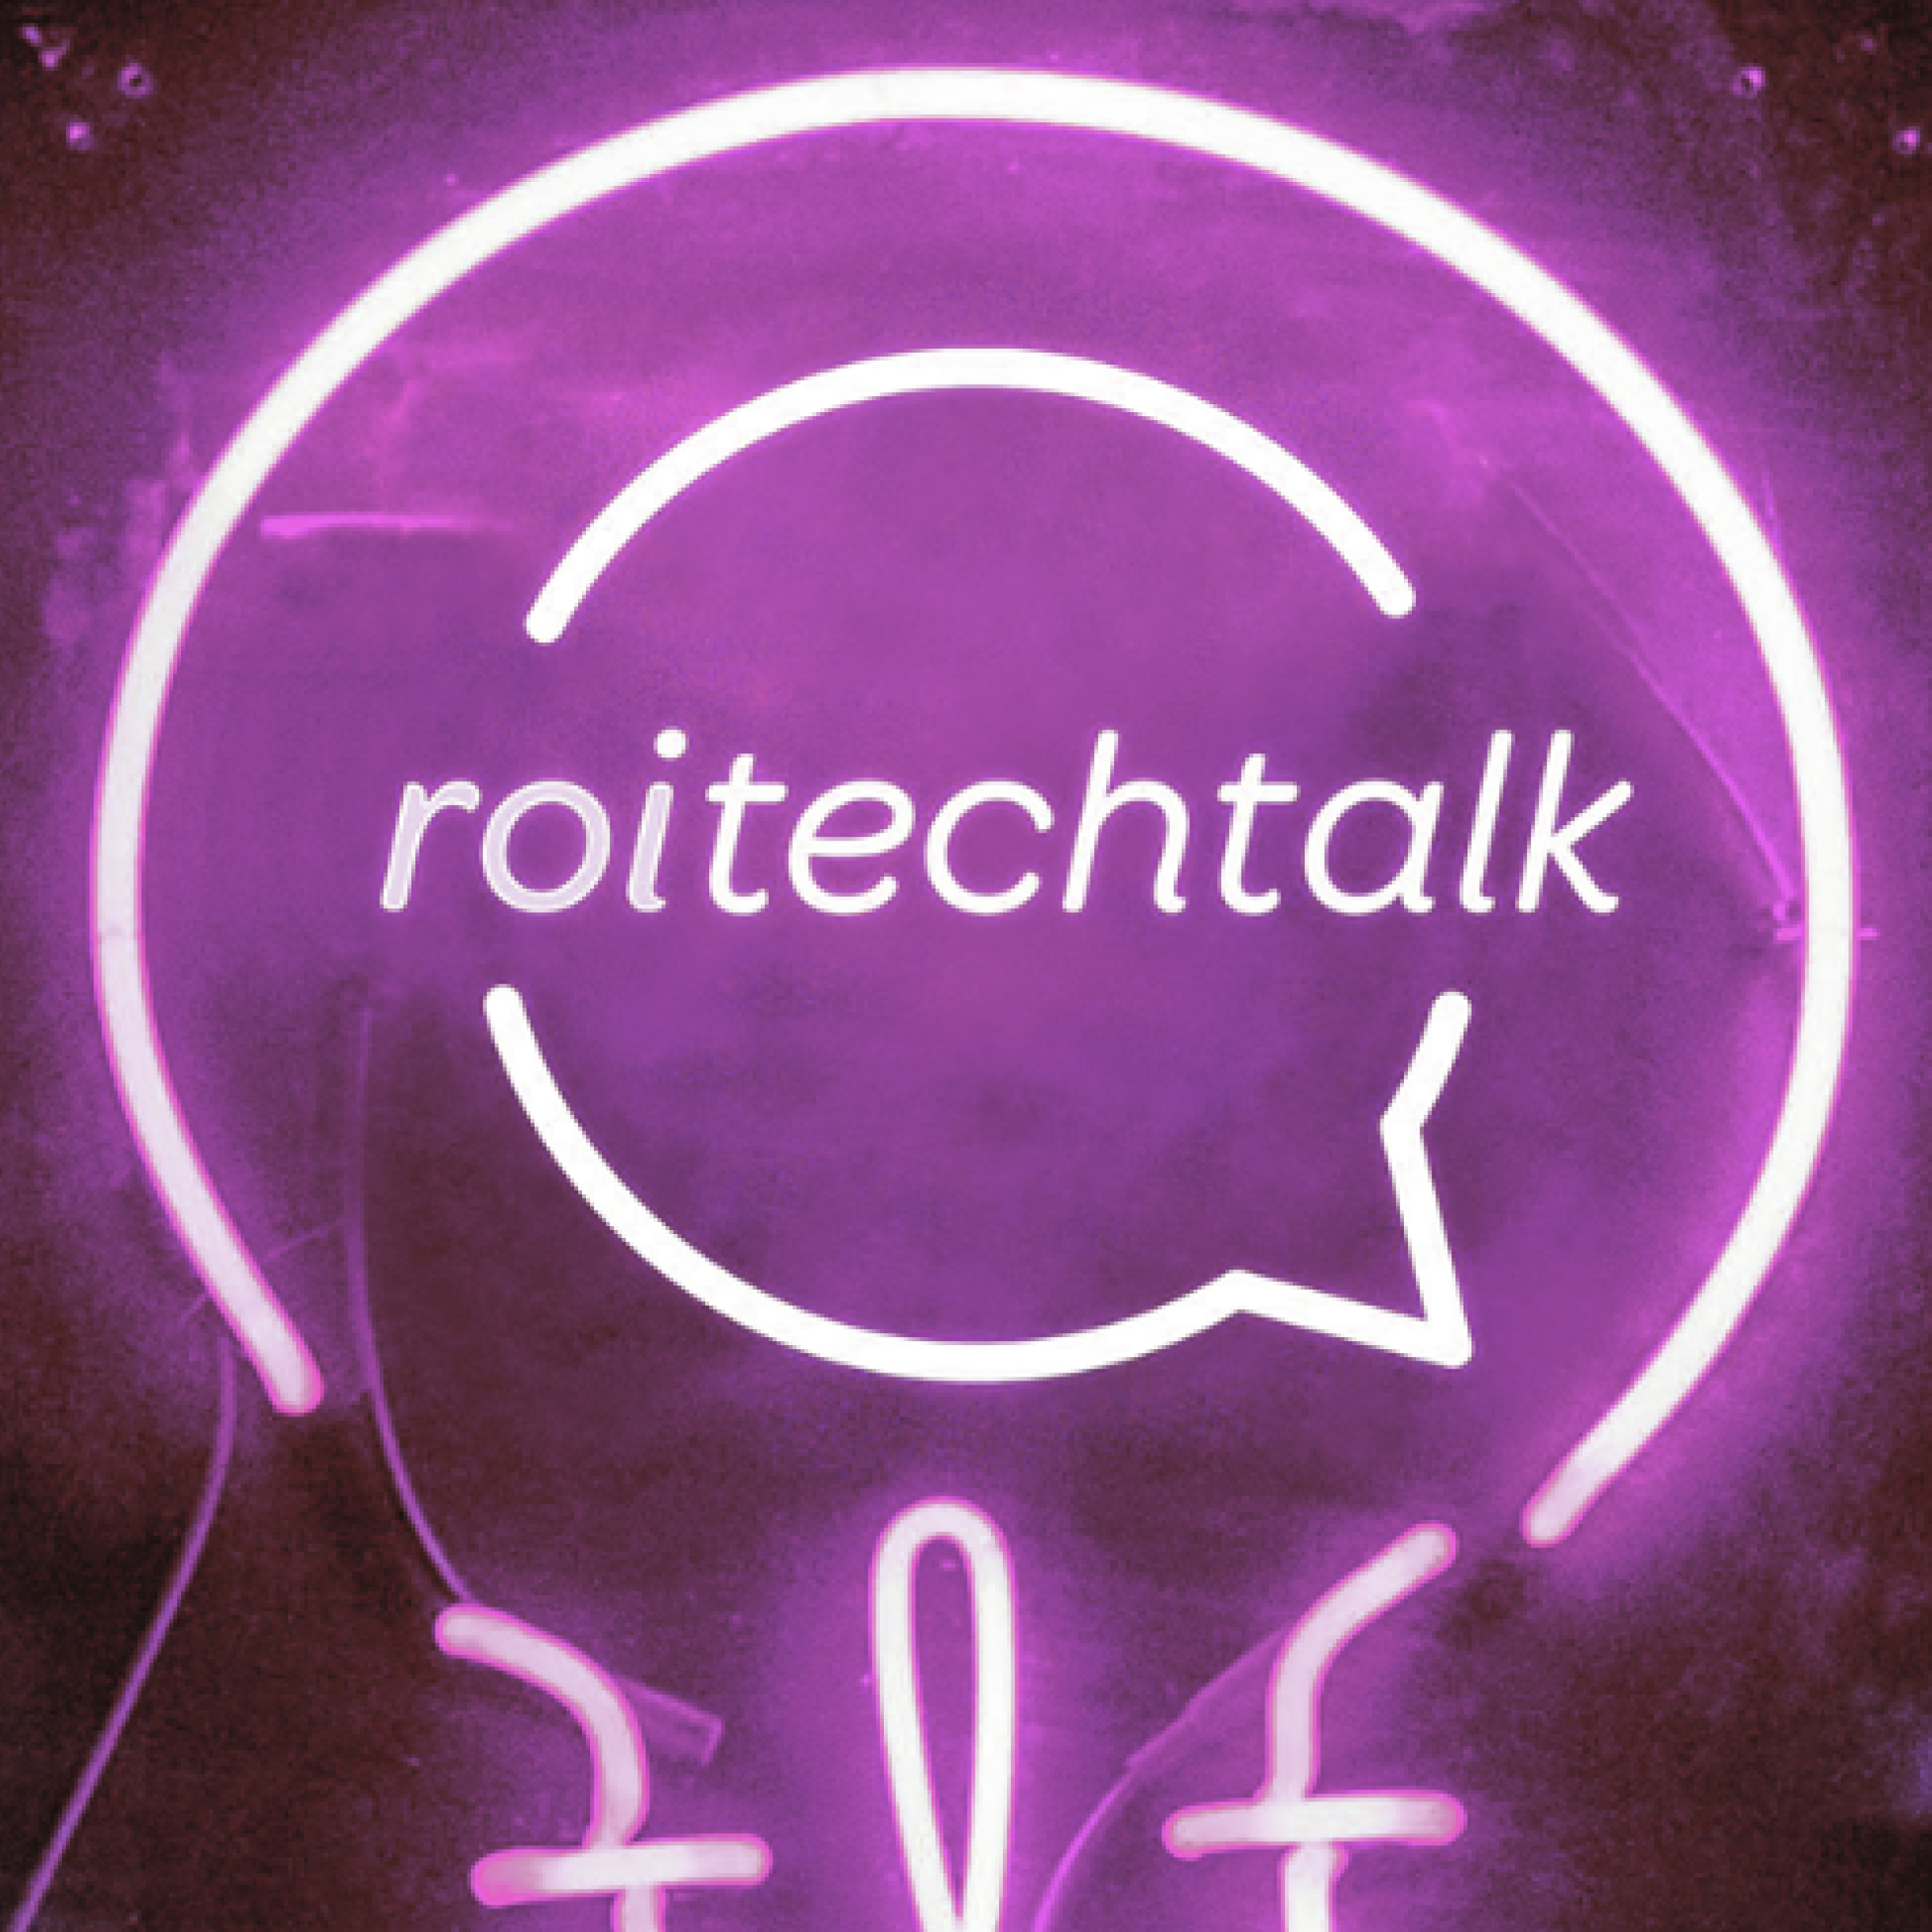 ROI Tech Talks